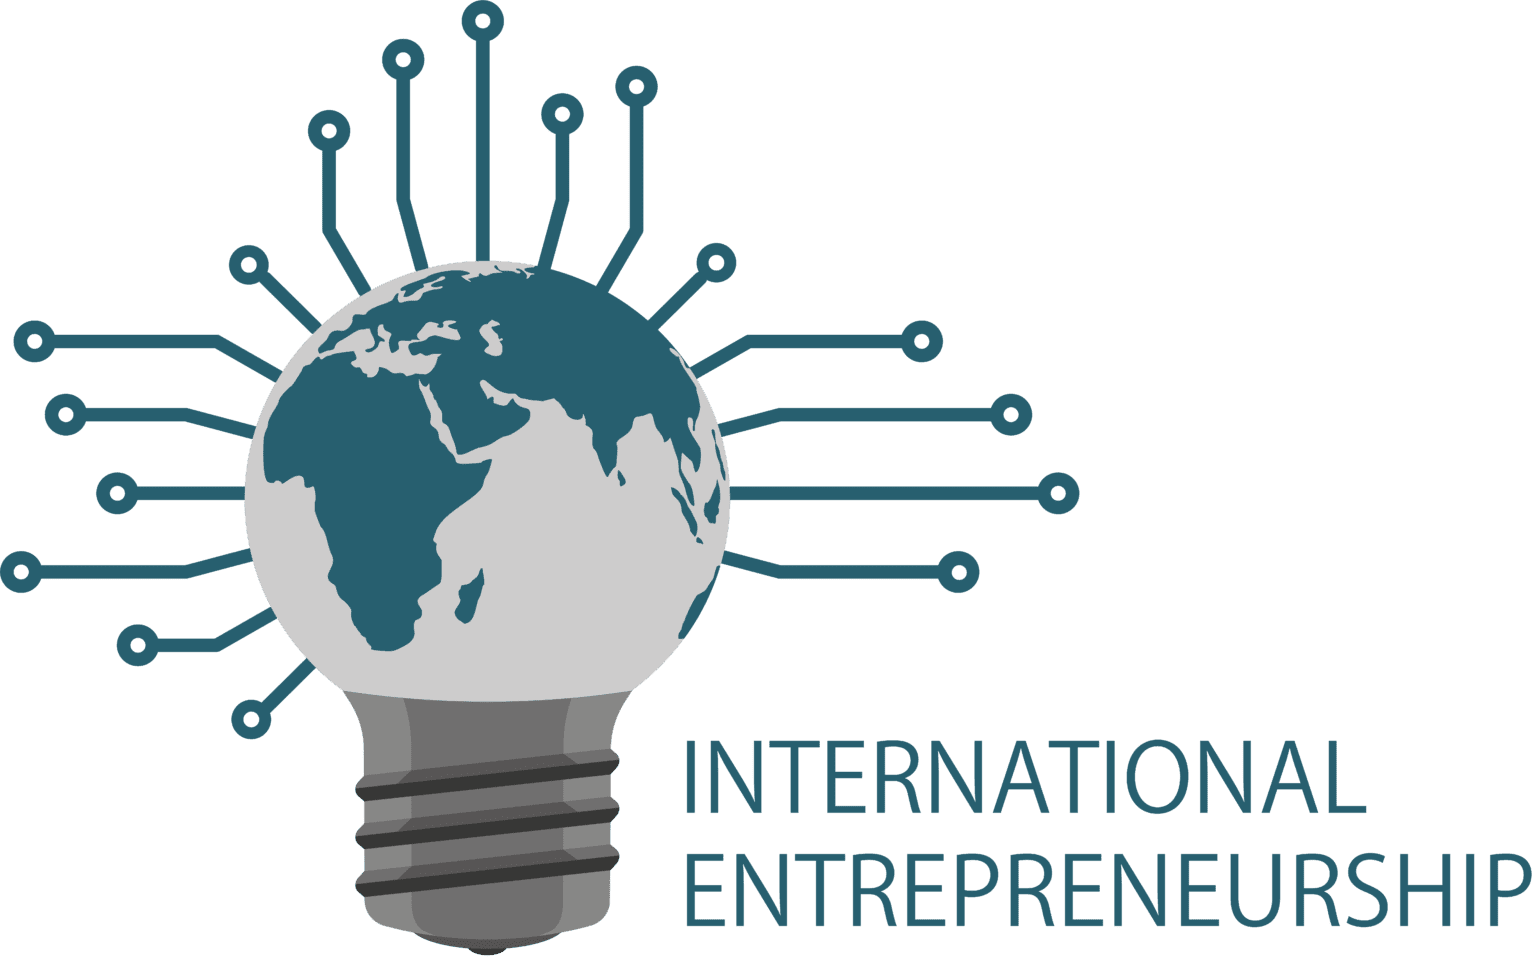 abstract on international entrepreneurship